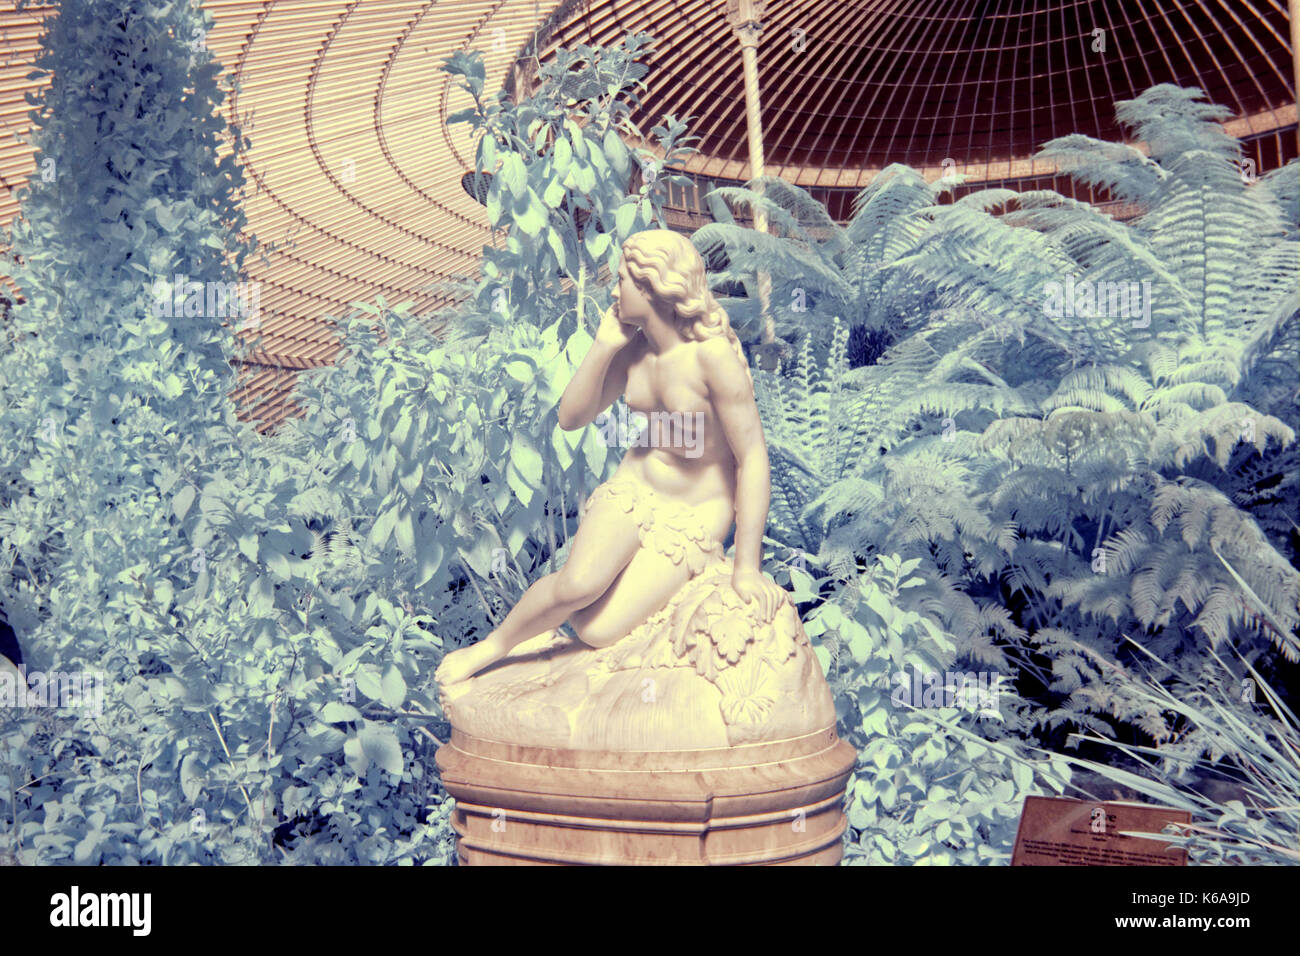 Statue d'eve, jardins botaniques, la caméra infra rouge tentation d'eve kibble palace glasgow eve par scipione tadolini (c.1870) Banque D'Images